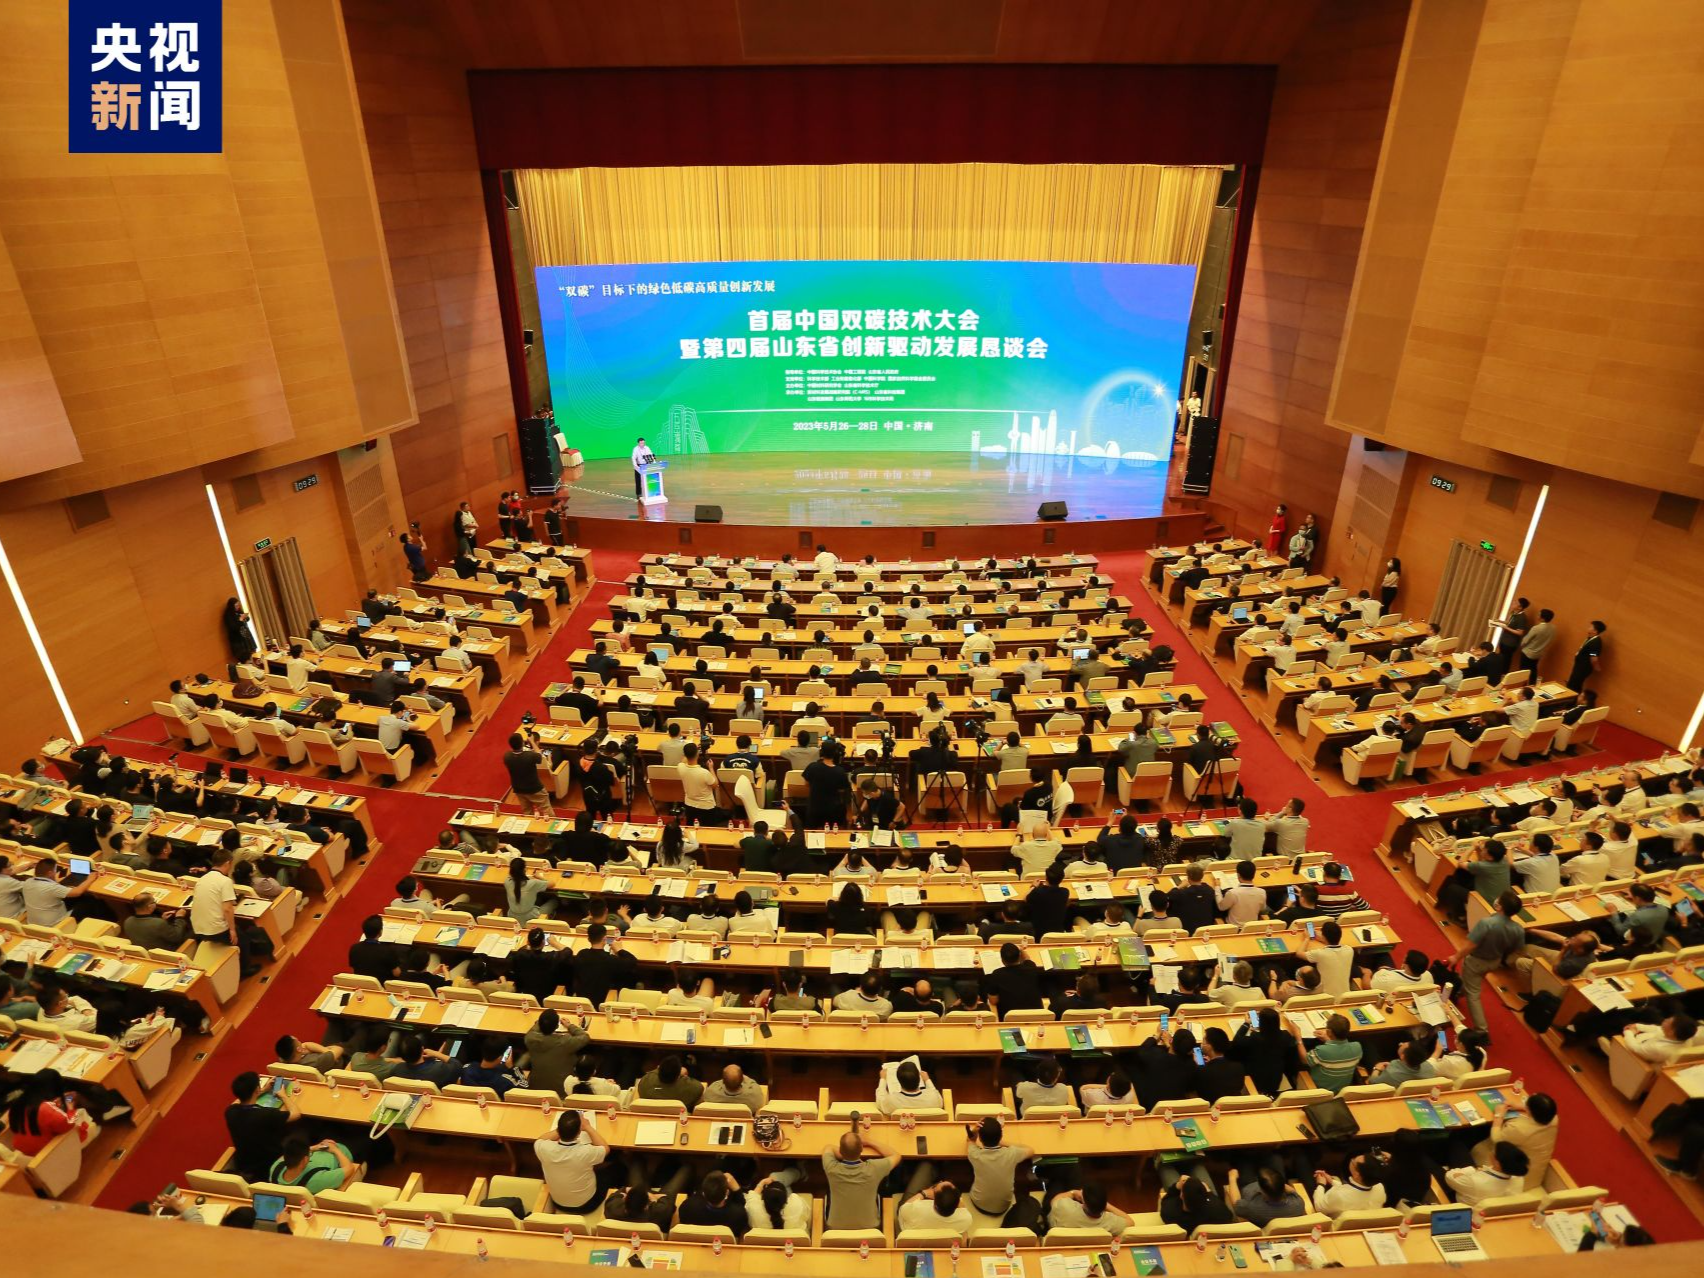 首届中国双碳技术大会在济南举办 签署项目计划投资184亿元